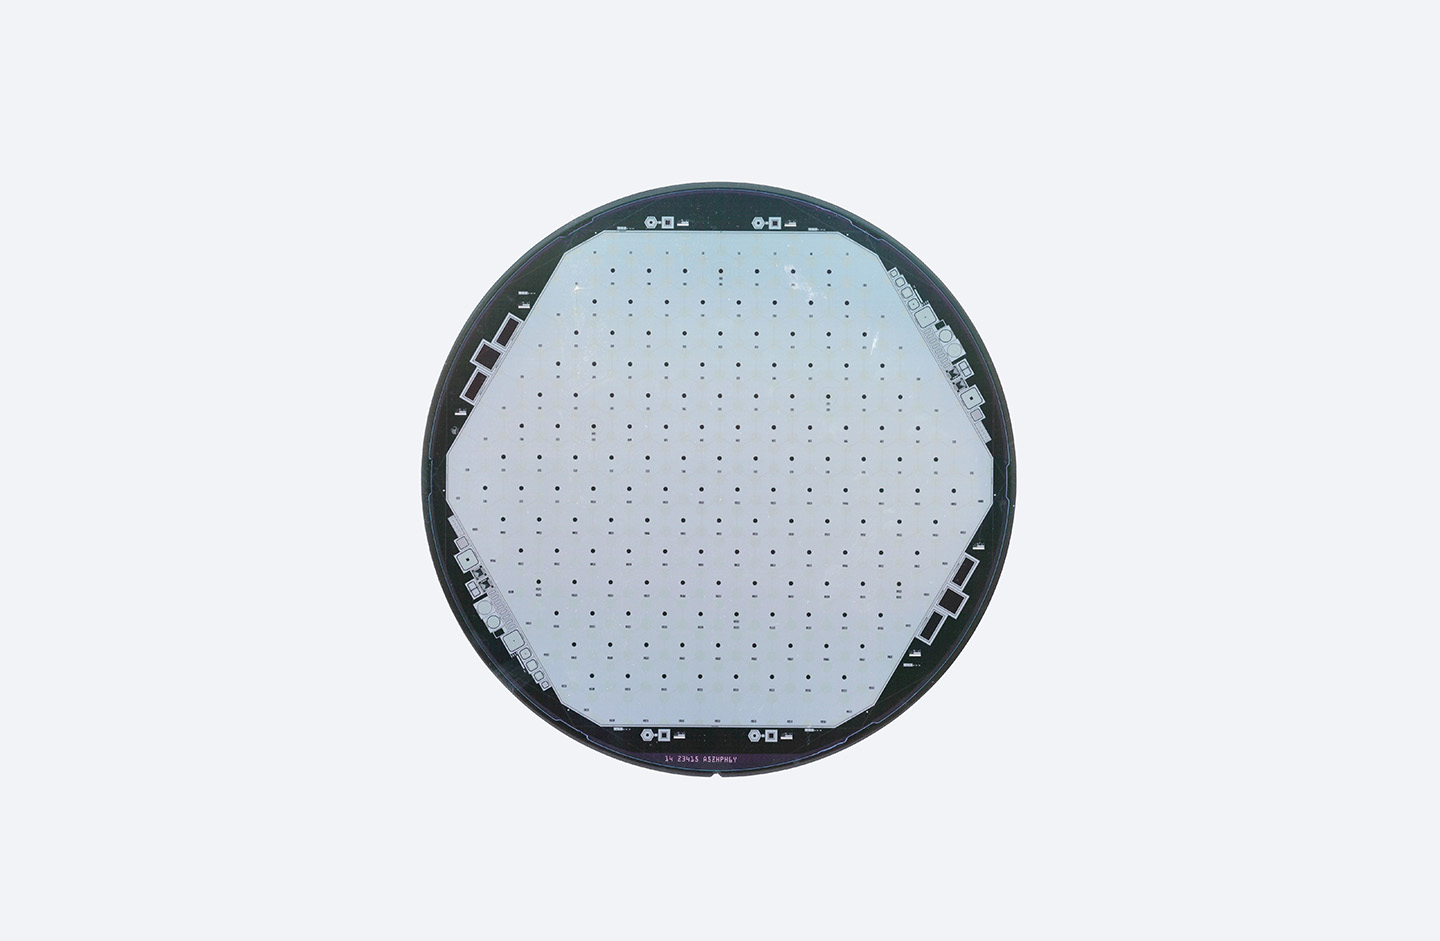 Hamamatsu 8 inch pixel array detector